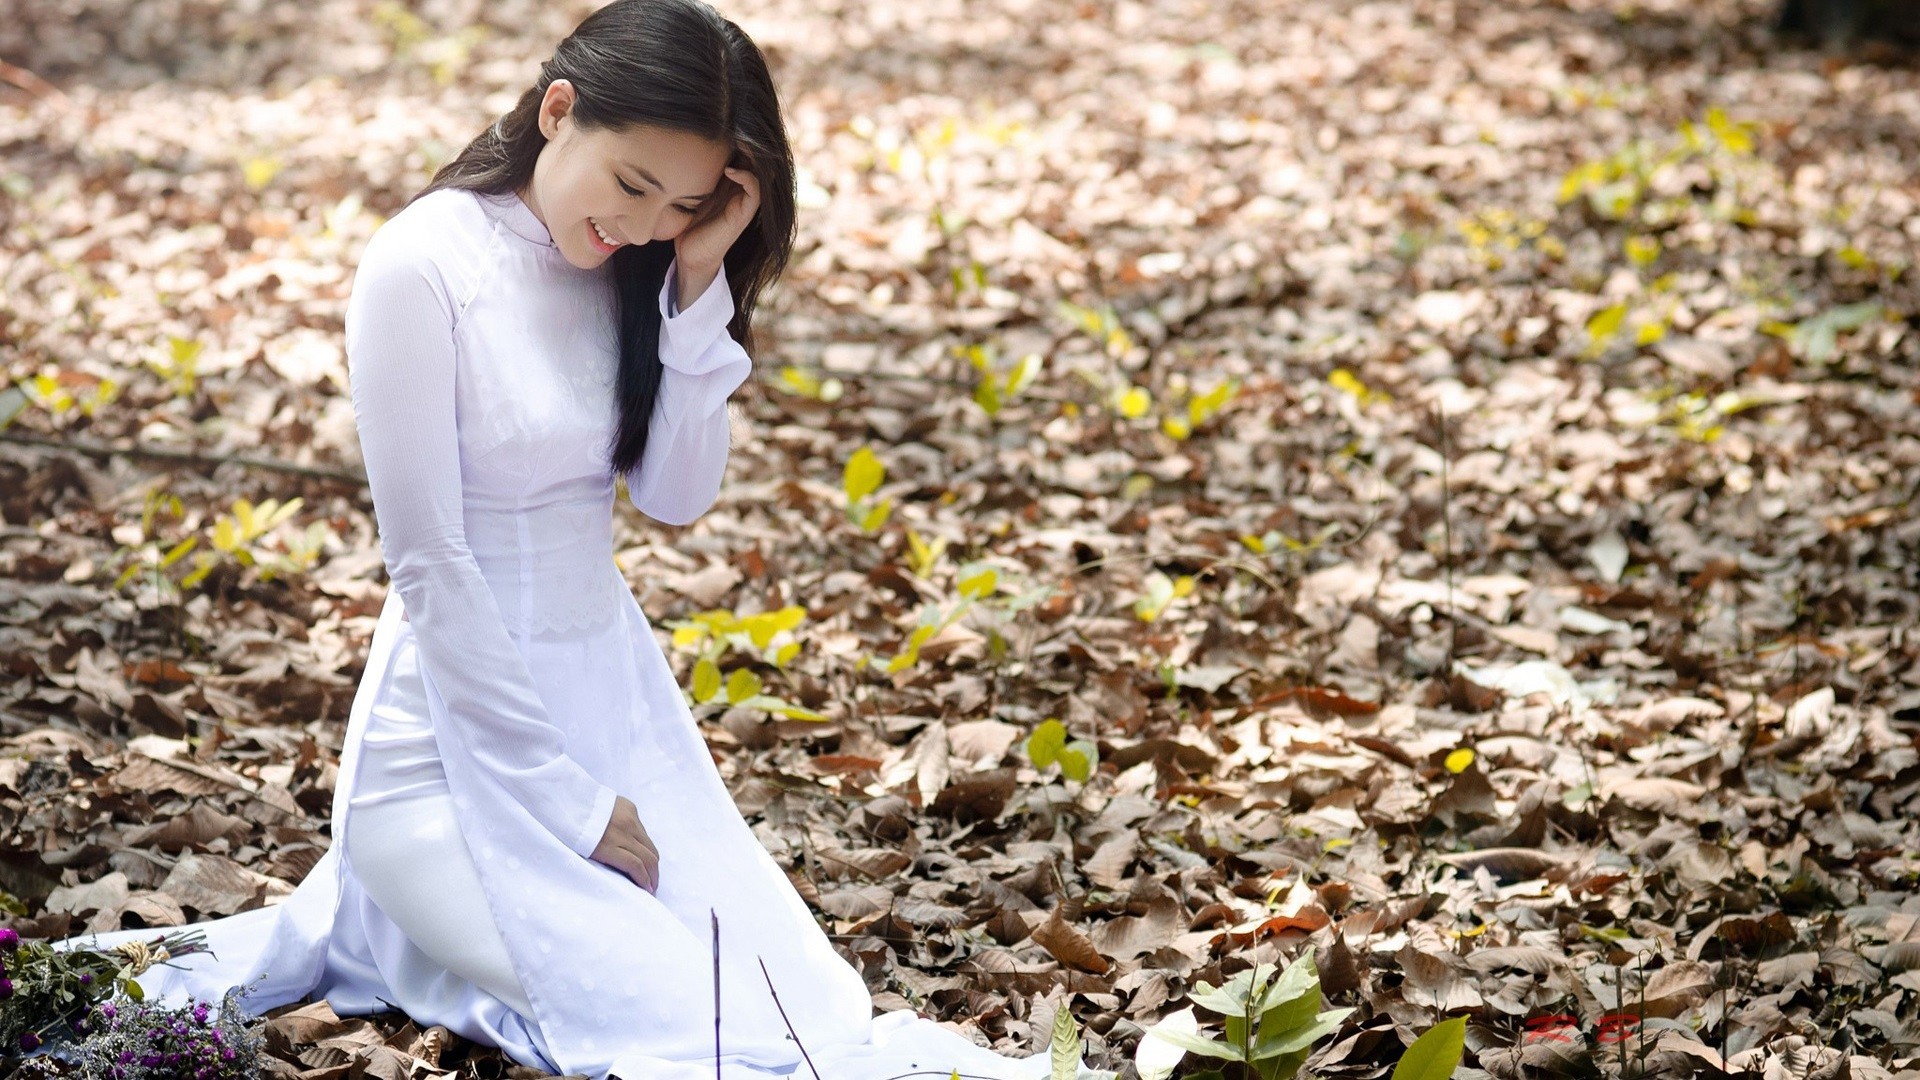 People 1920x1080 Asian smiling leaves white dress women outdoors fallen leaves kneeling women